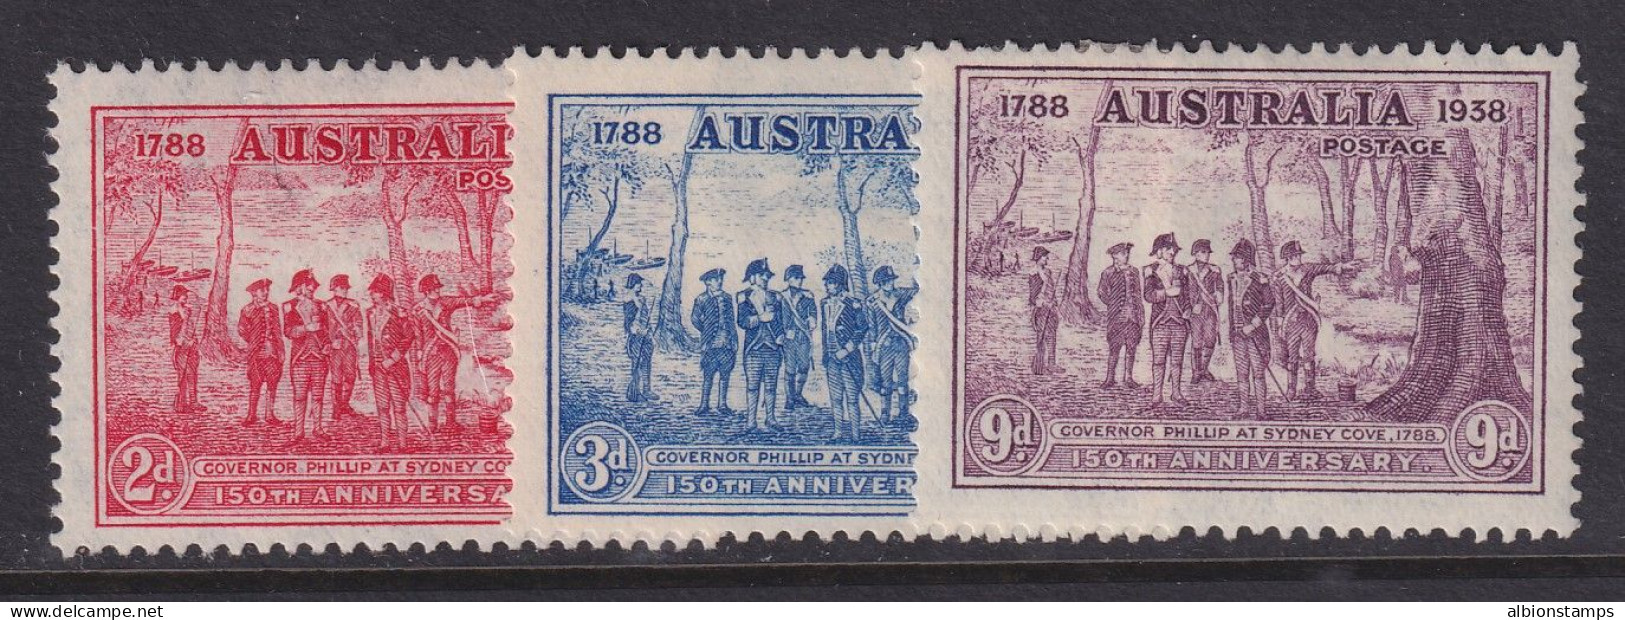 Australia, Scott 163-165 (SG 193-195), MHR - Neufs